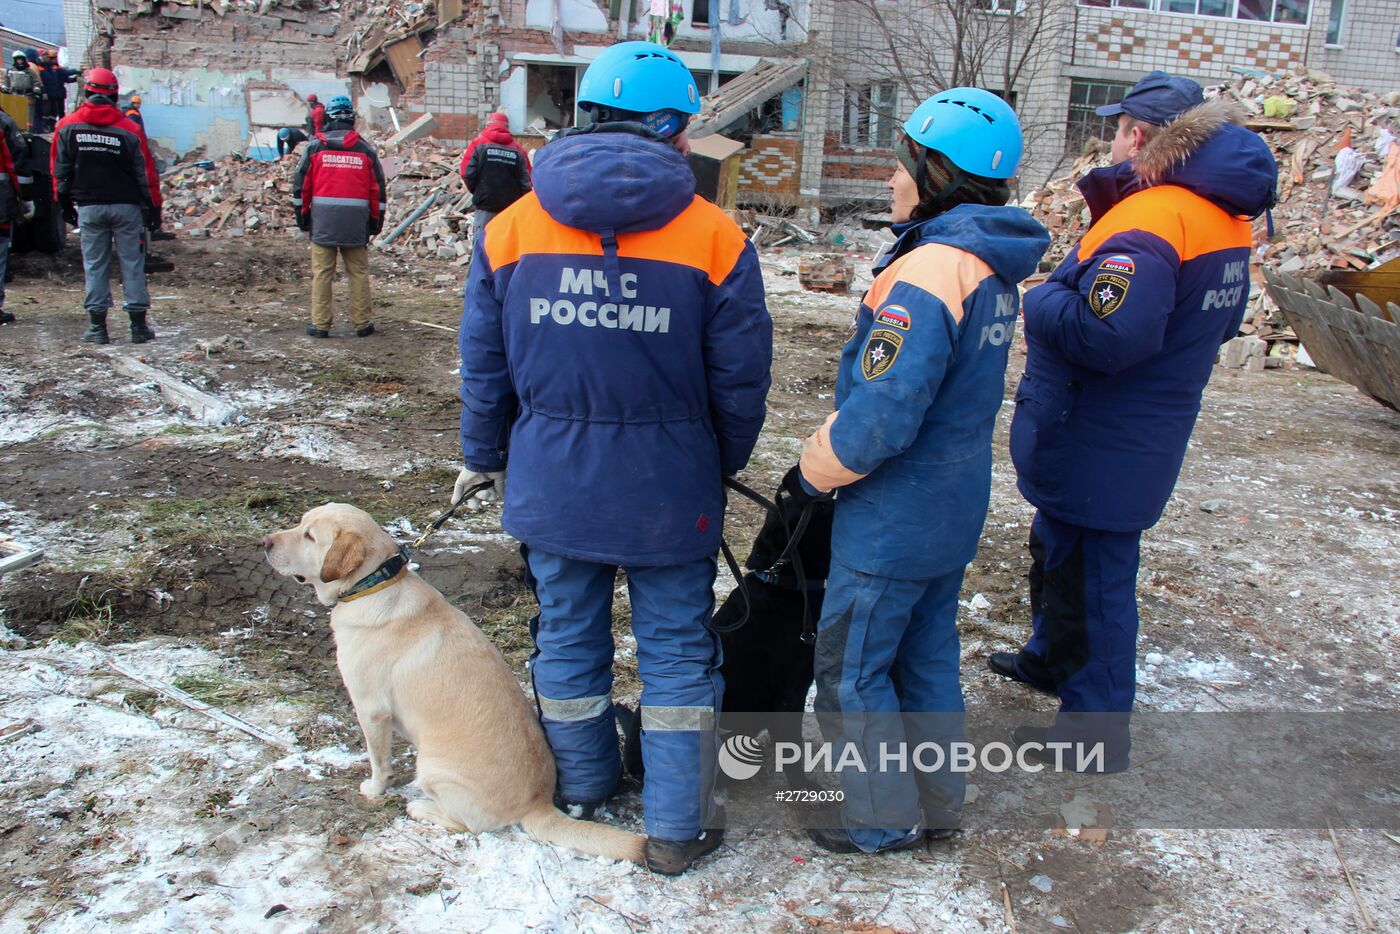 Взрыв газа в жилом доме в Хабаровском крае